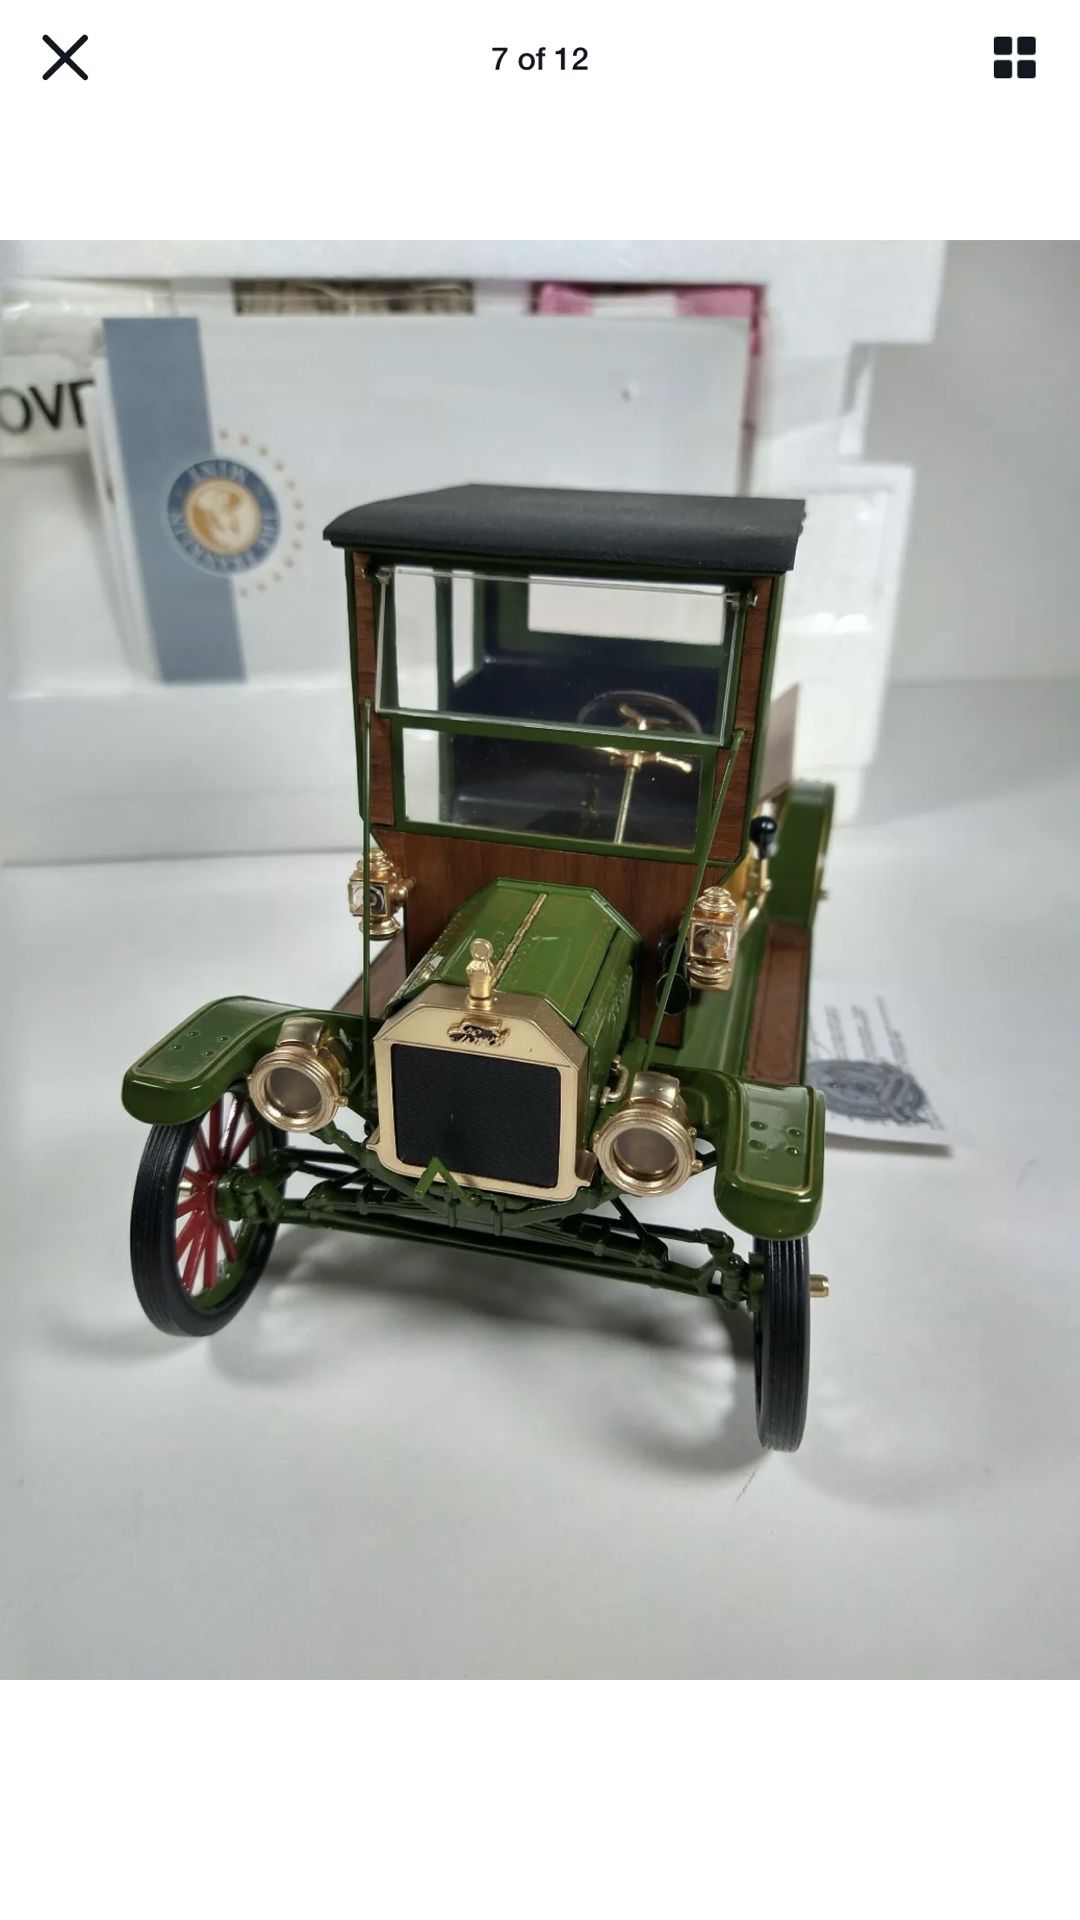 Franklin mint 1913 Ford